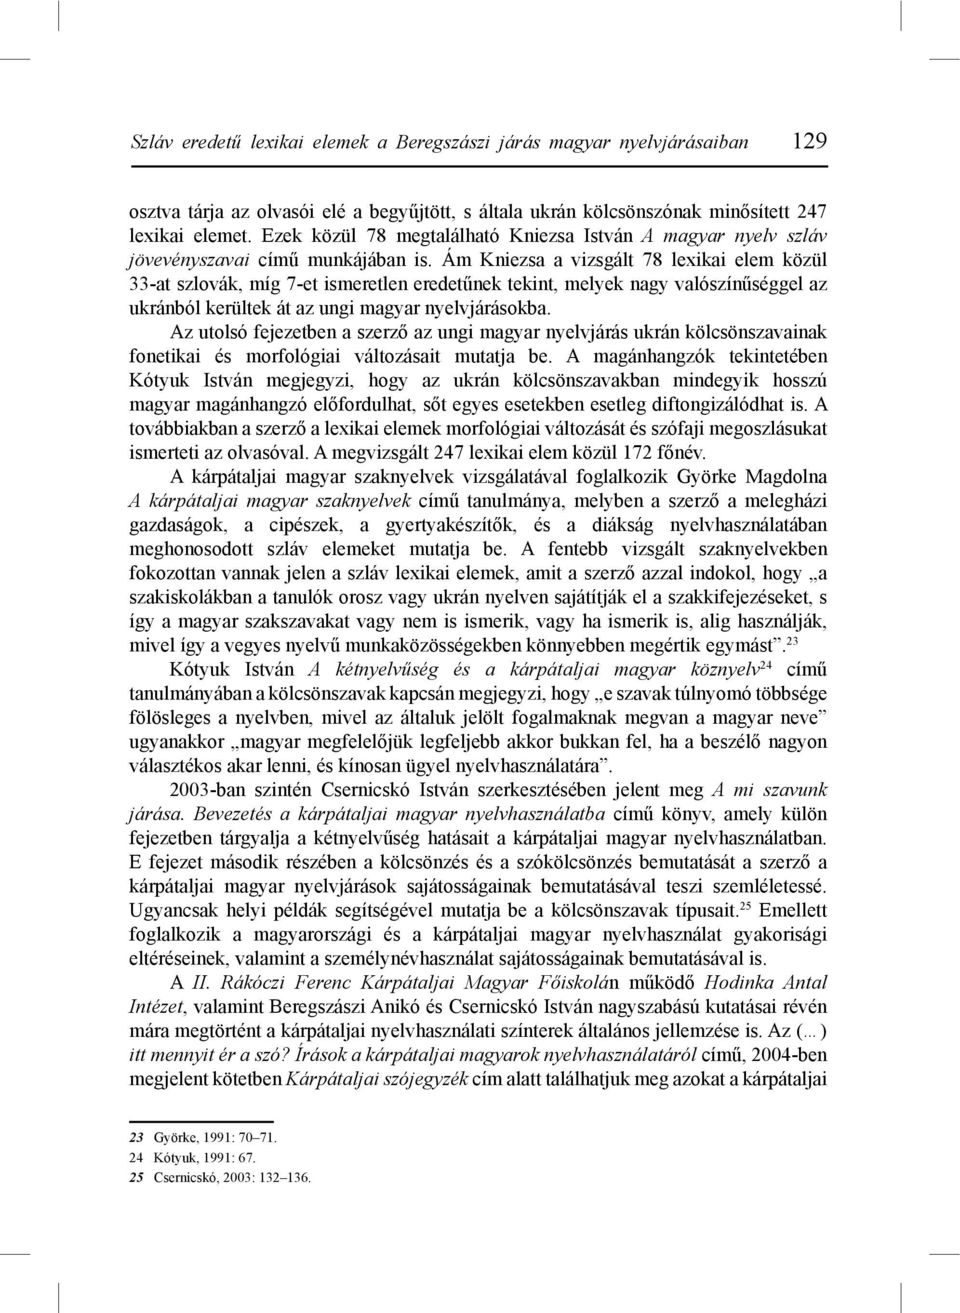 Ám Kniezsa a vizsgált 78 lexikai elem közül 33-at szlovák, míg 7-et ismeretlen eredetűnek tekint, melyek nagy valószínűséggel az ukránból kerültek át az ungi magyar nyelvjárásokba.